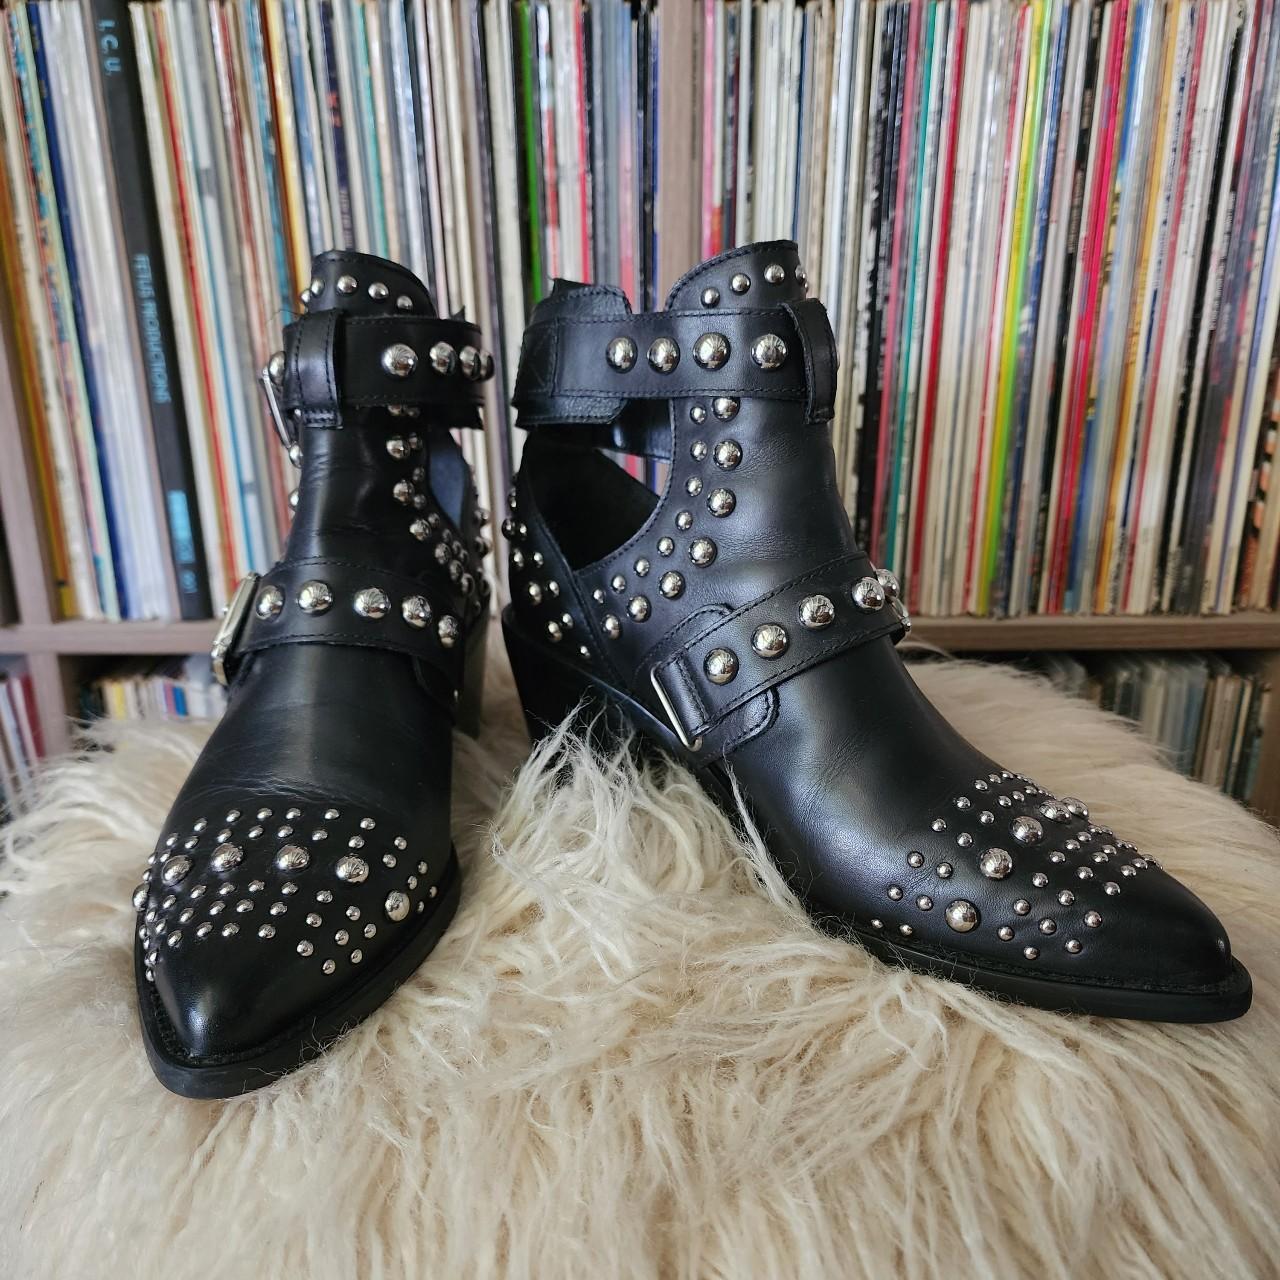 Kurt Geiger Women's Black and Silver Boots